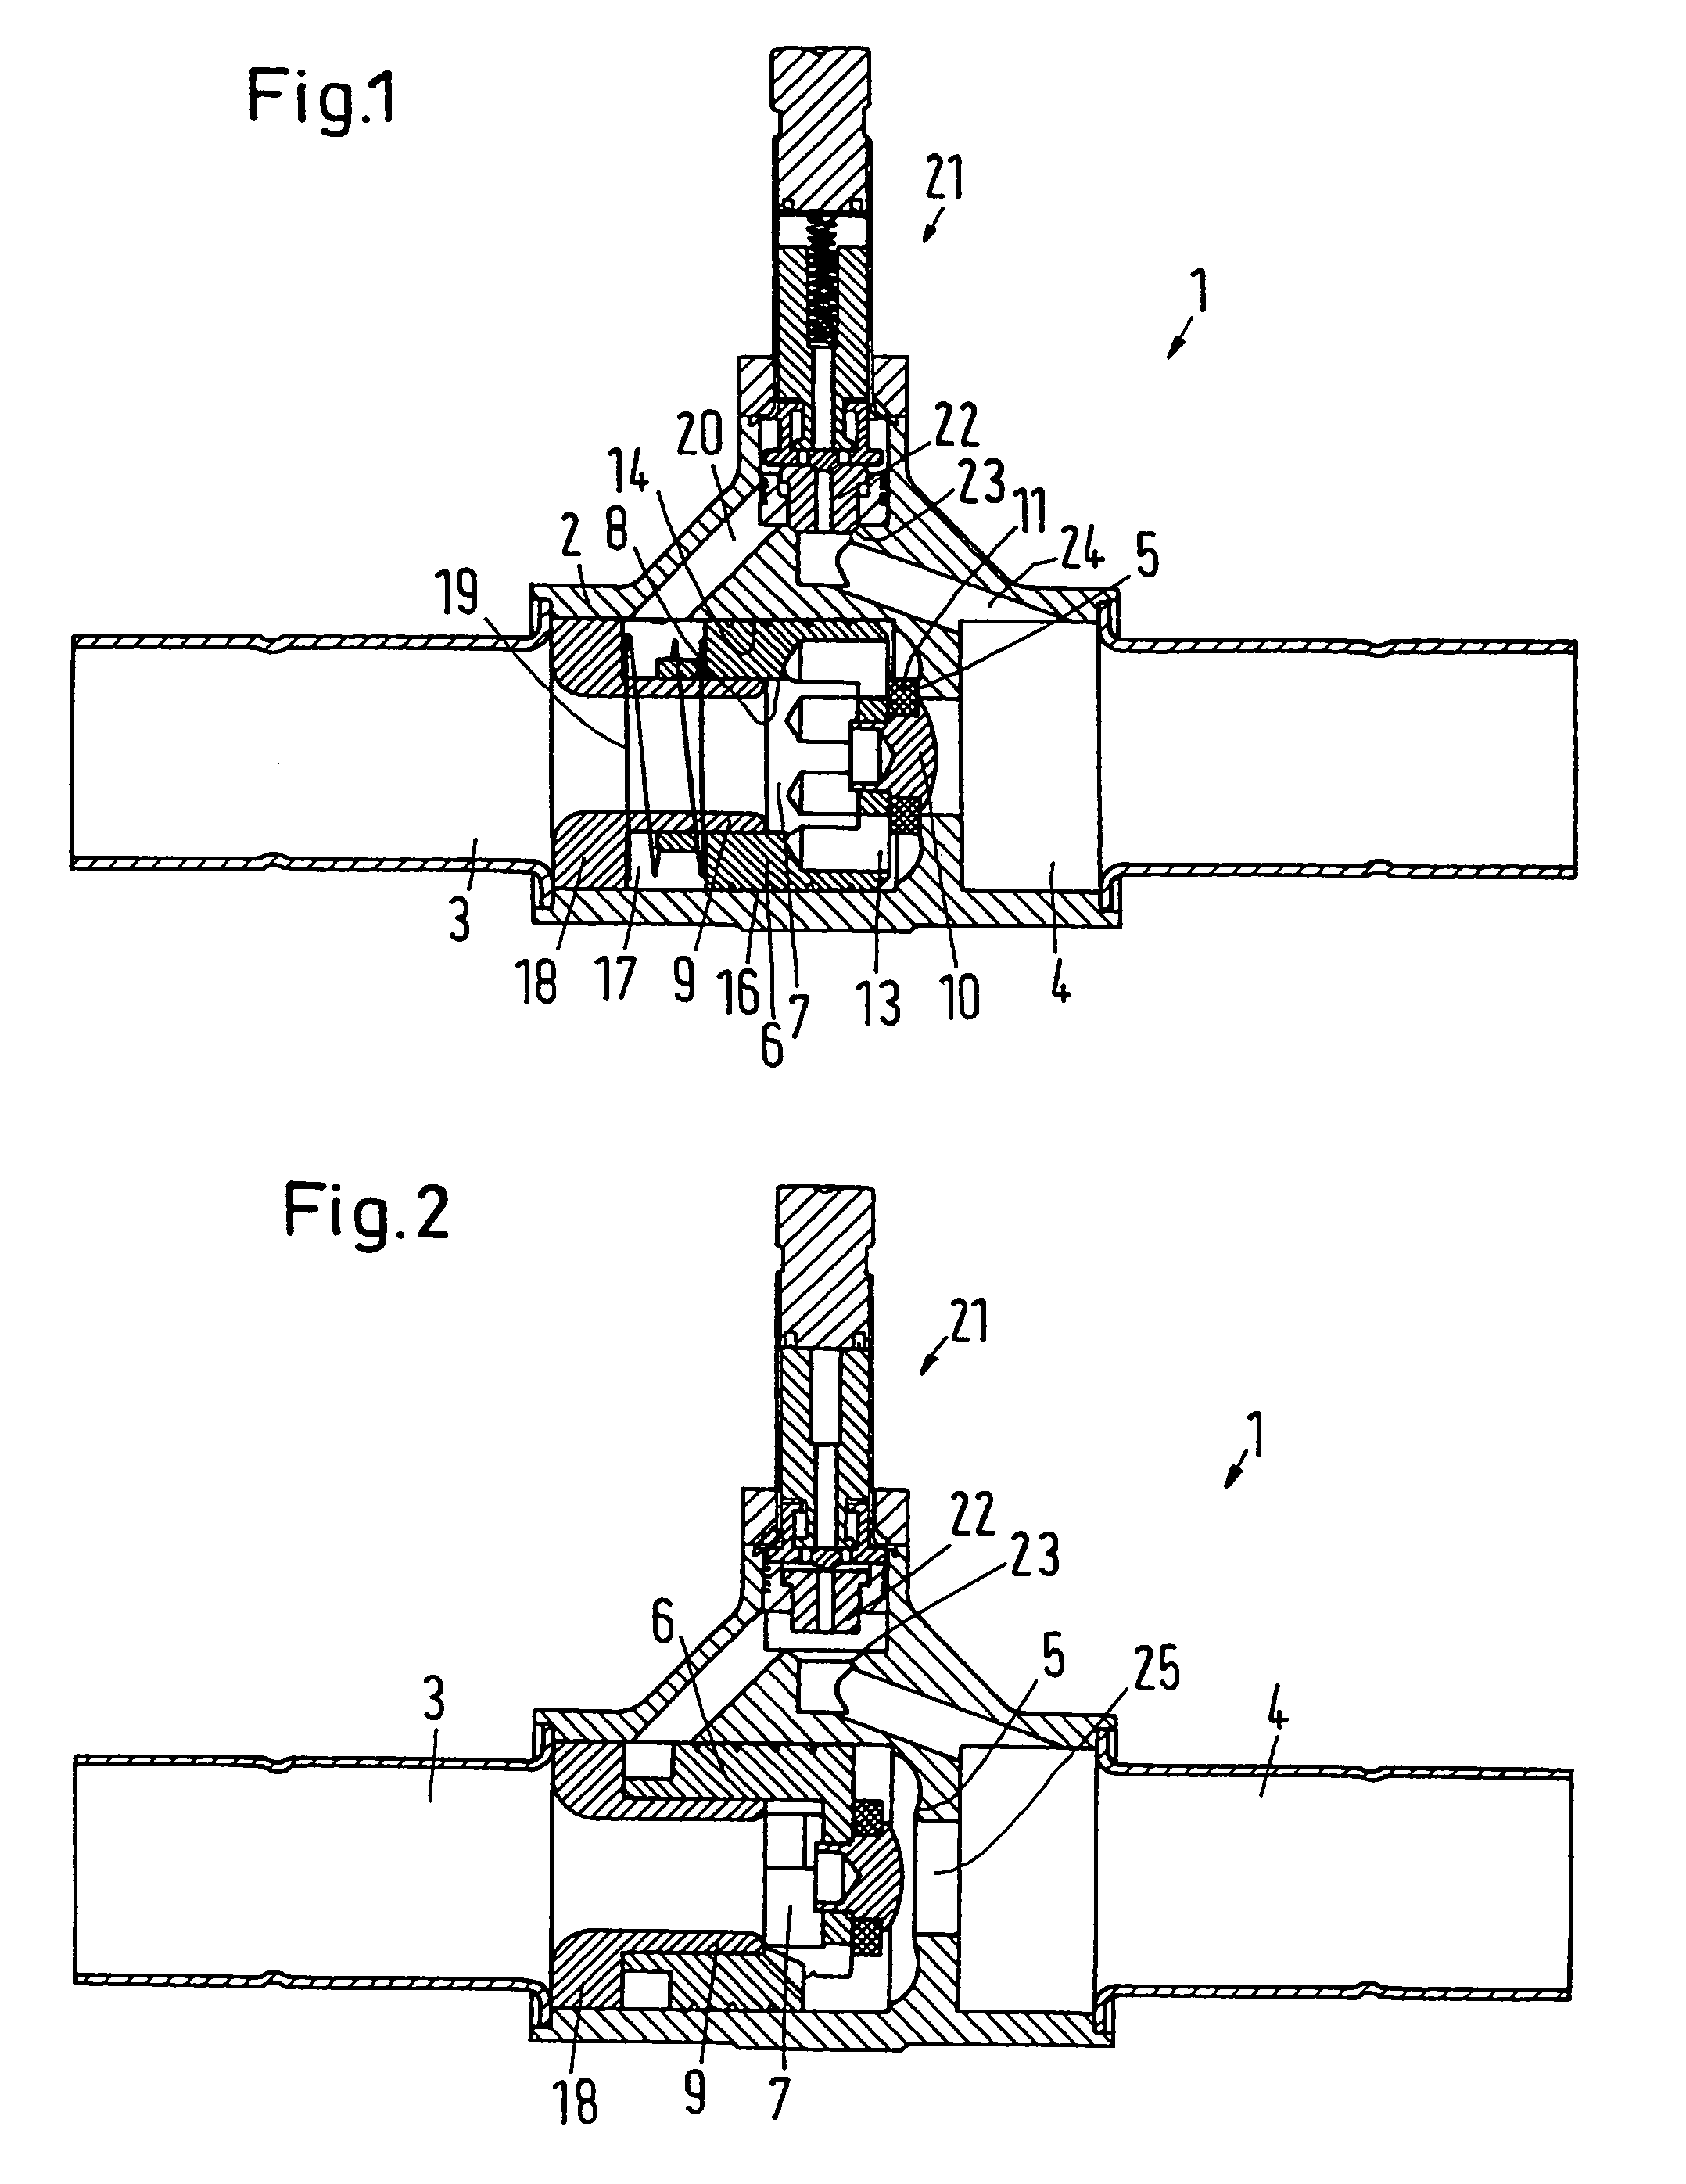 Axial valve